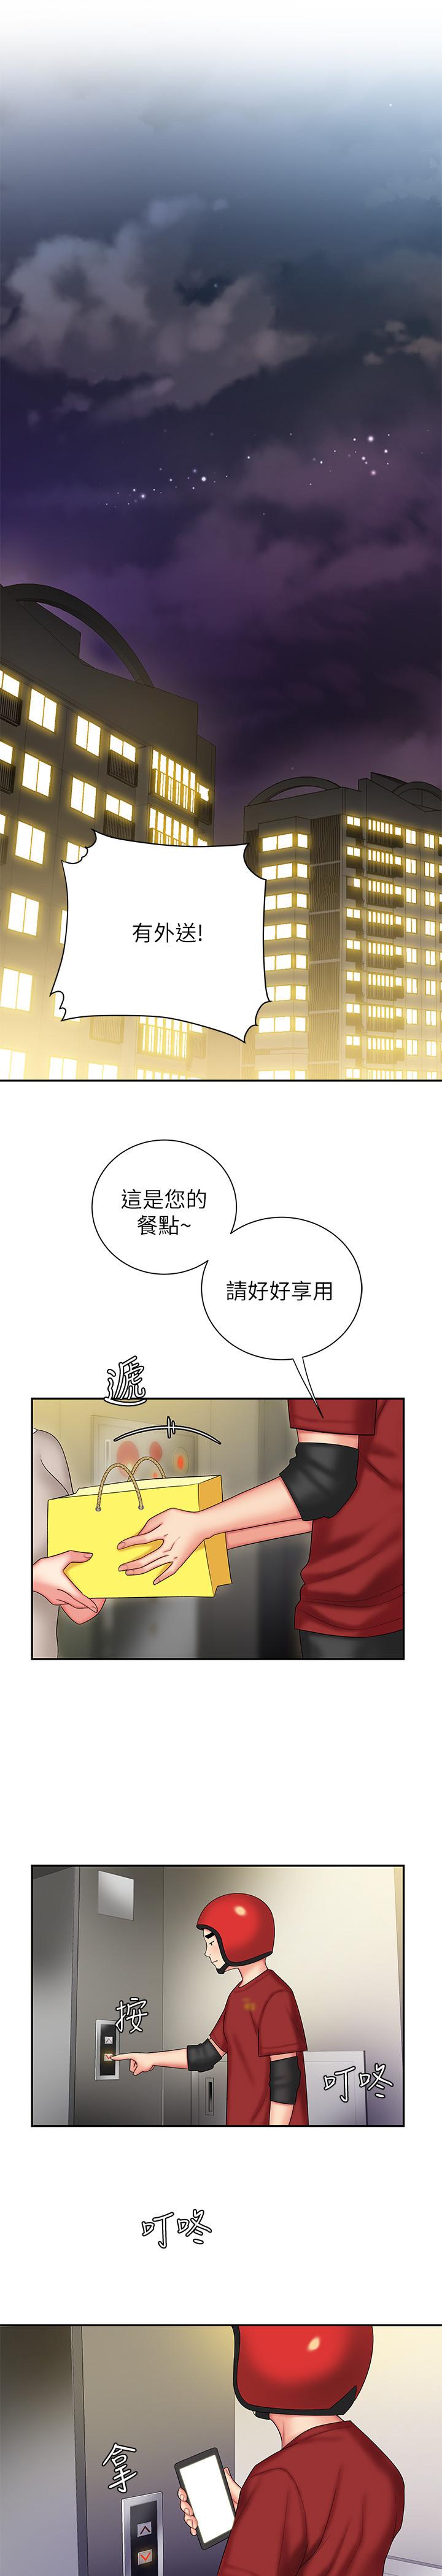 《幸福外送员》漫画 第26话 - 尚浩~要来个油压按摩吗?